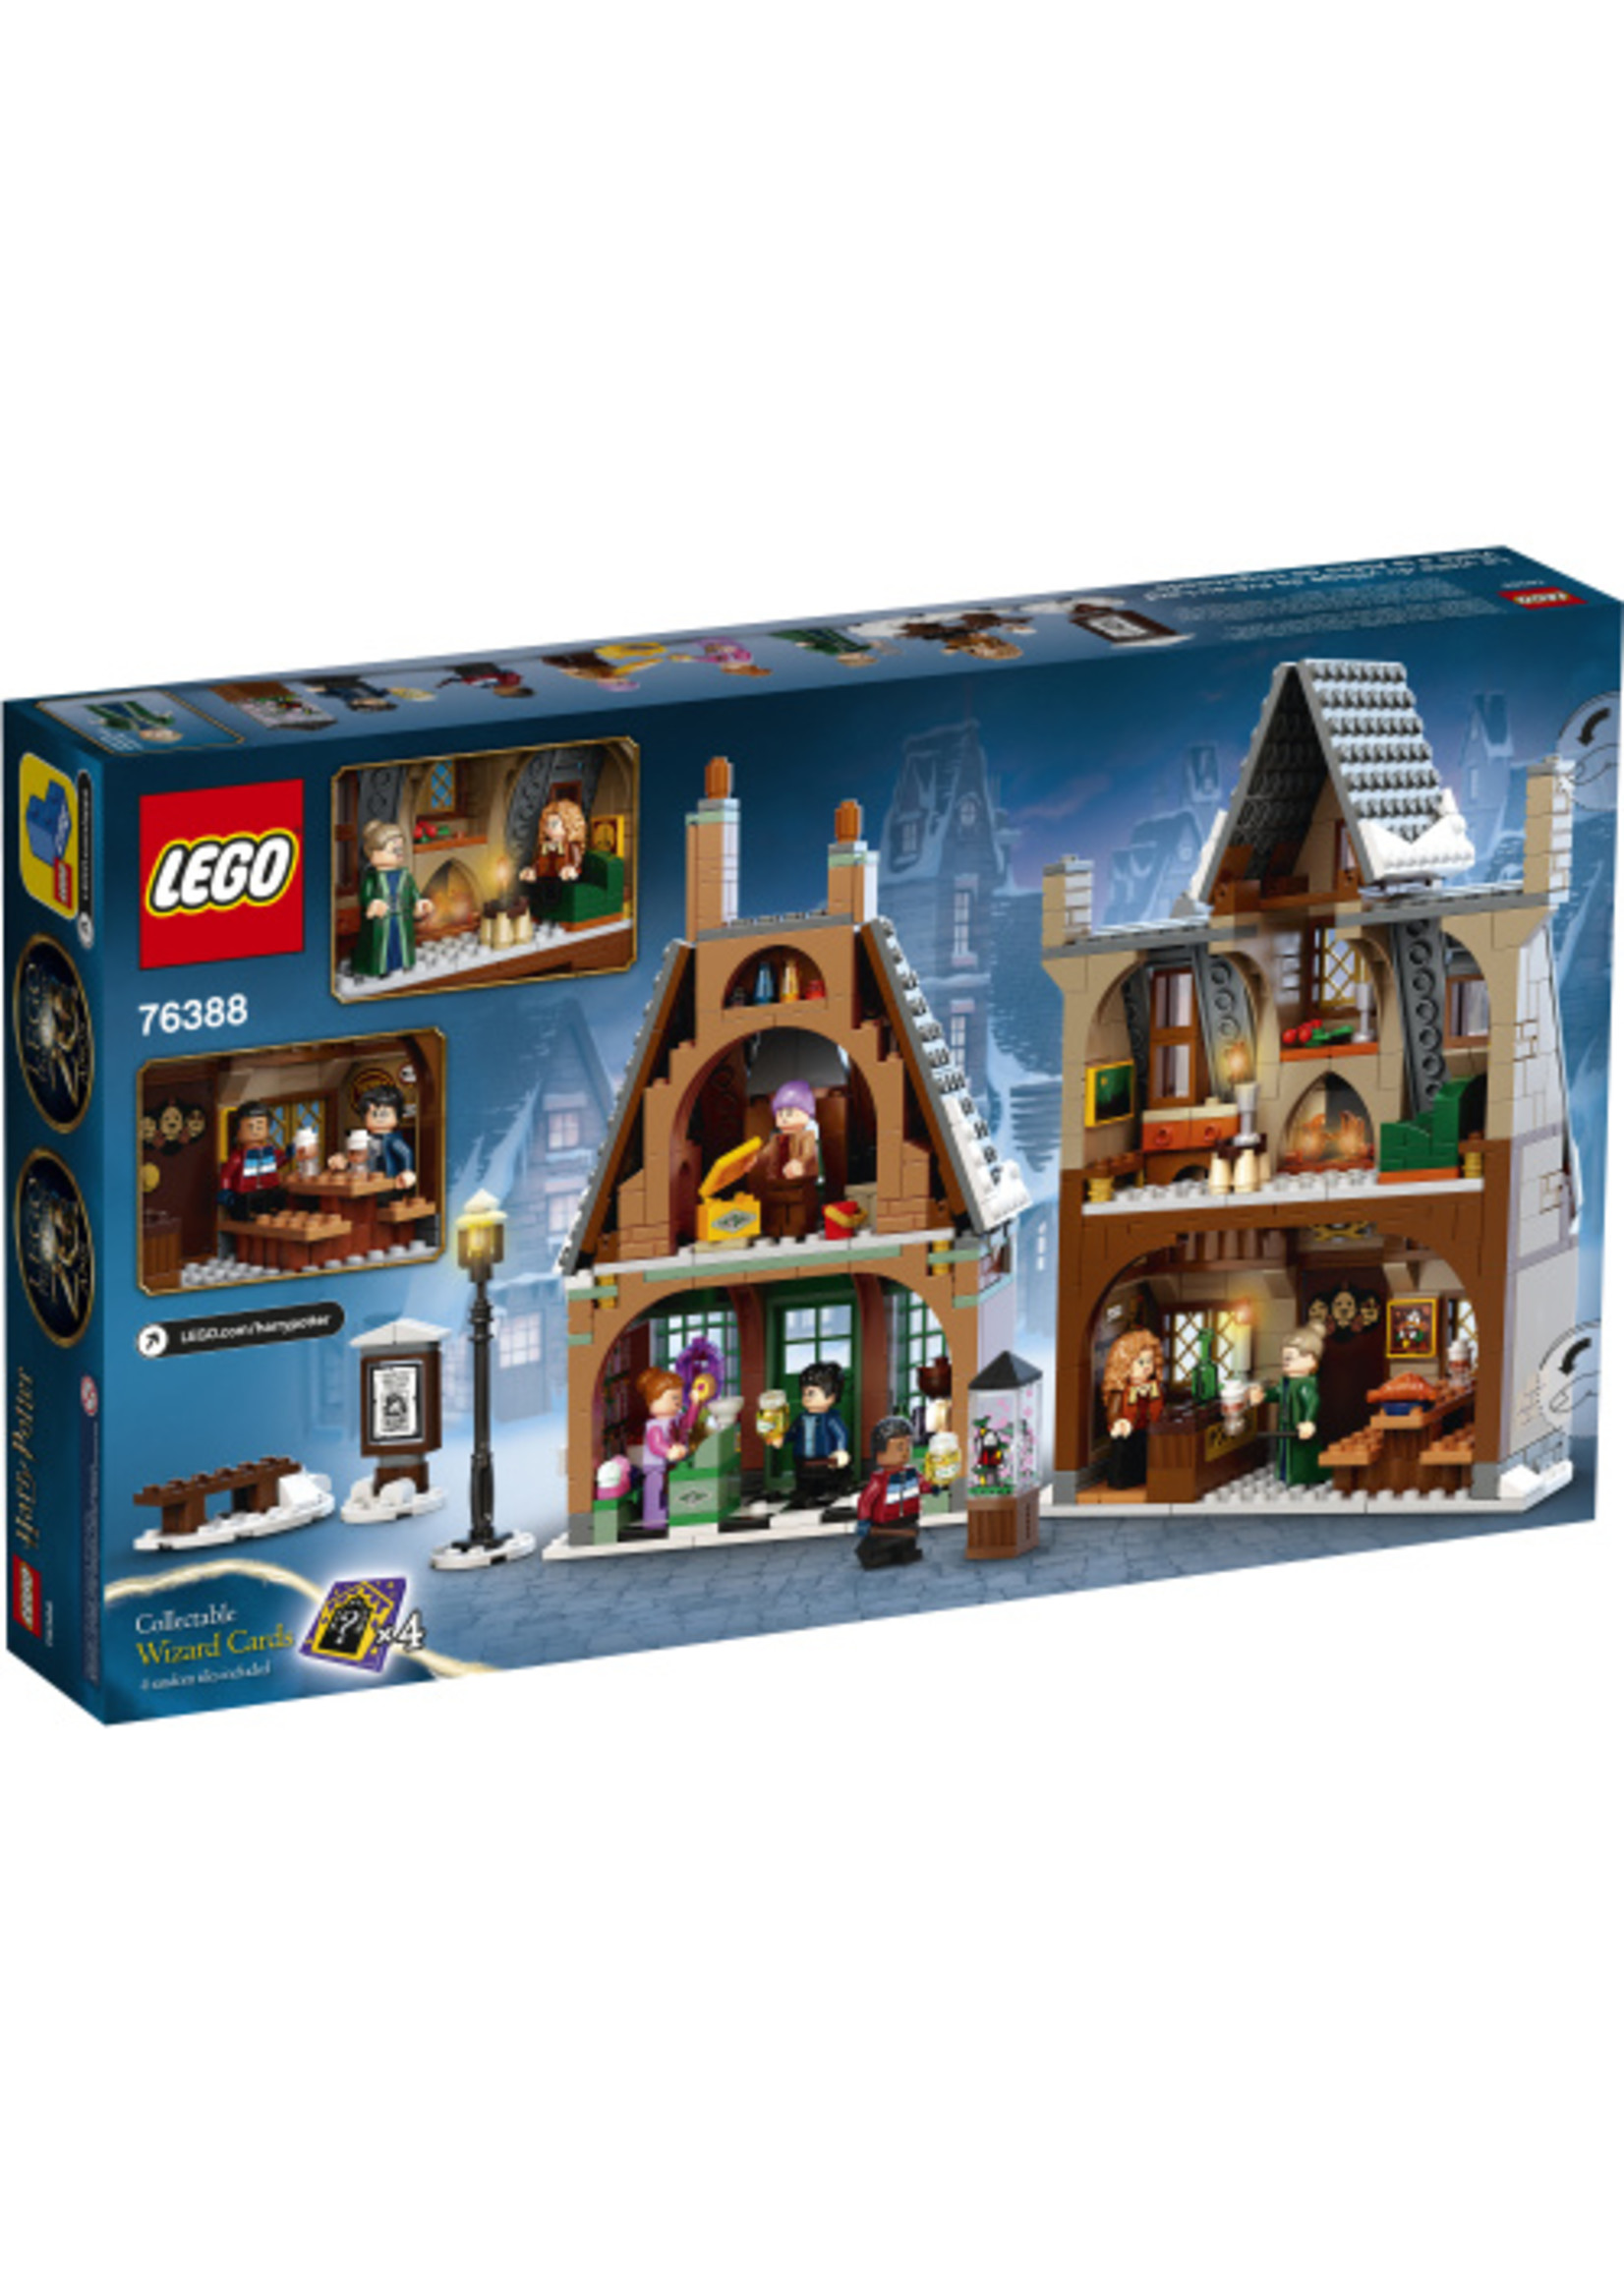 LEGO 76388 - Hogsmeade Village Visit